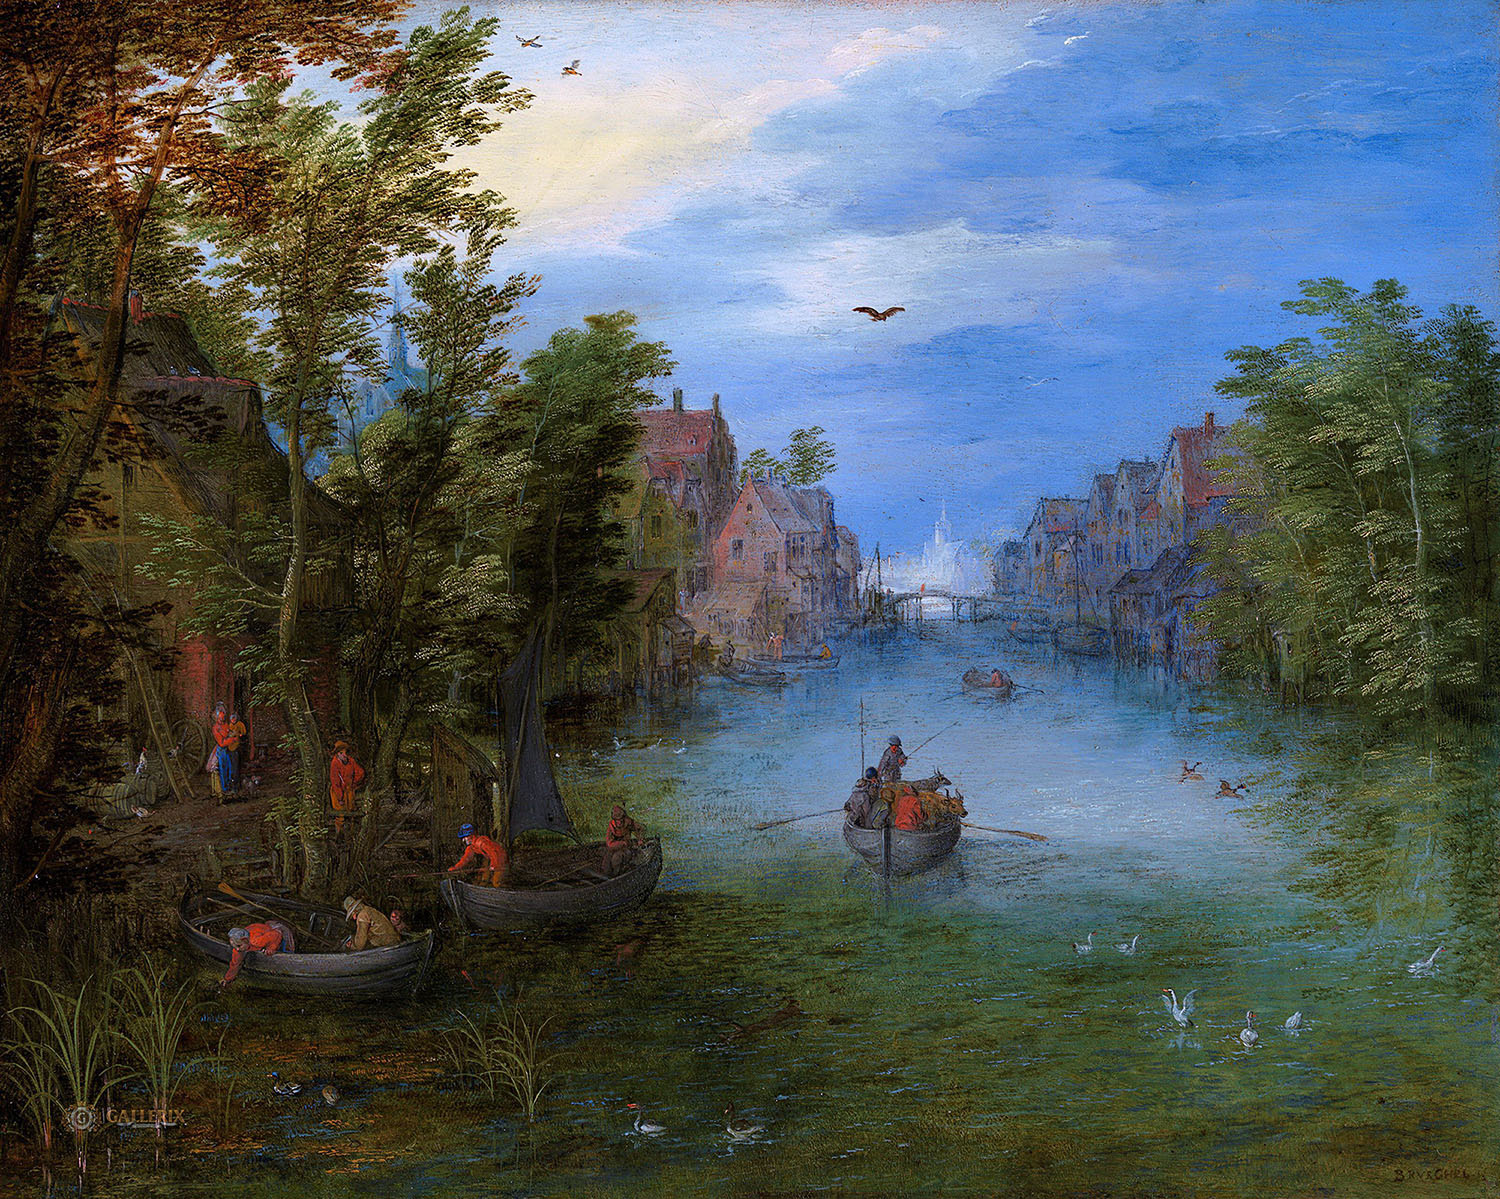 Ян Брейгель Старший. "Пейзаж с рекой, проходящей через деревню". 1602-1603. Частная коллекция.